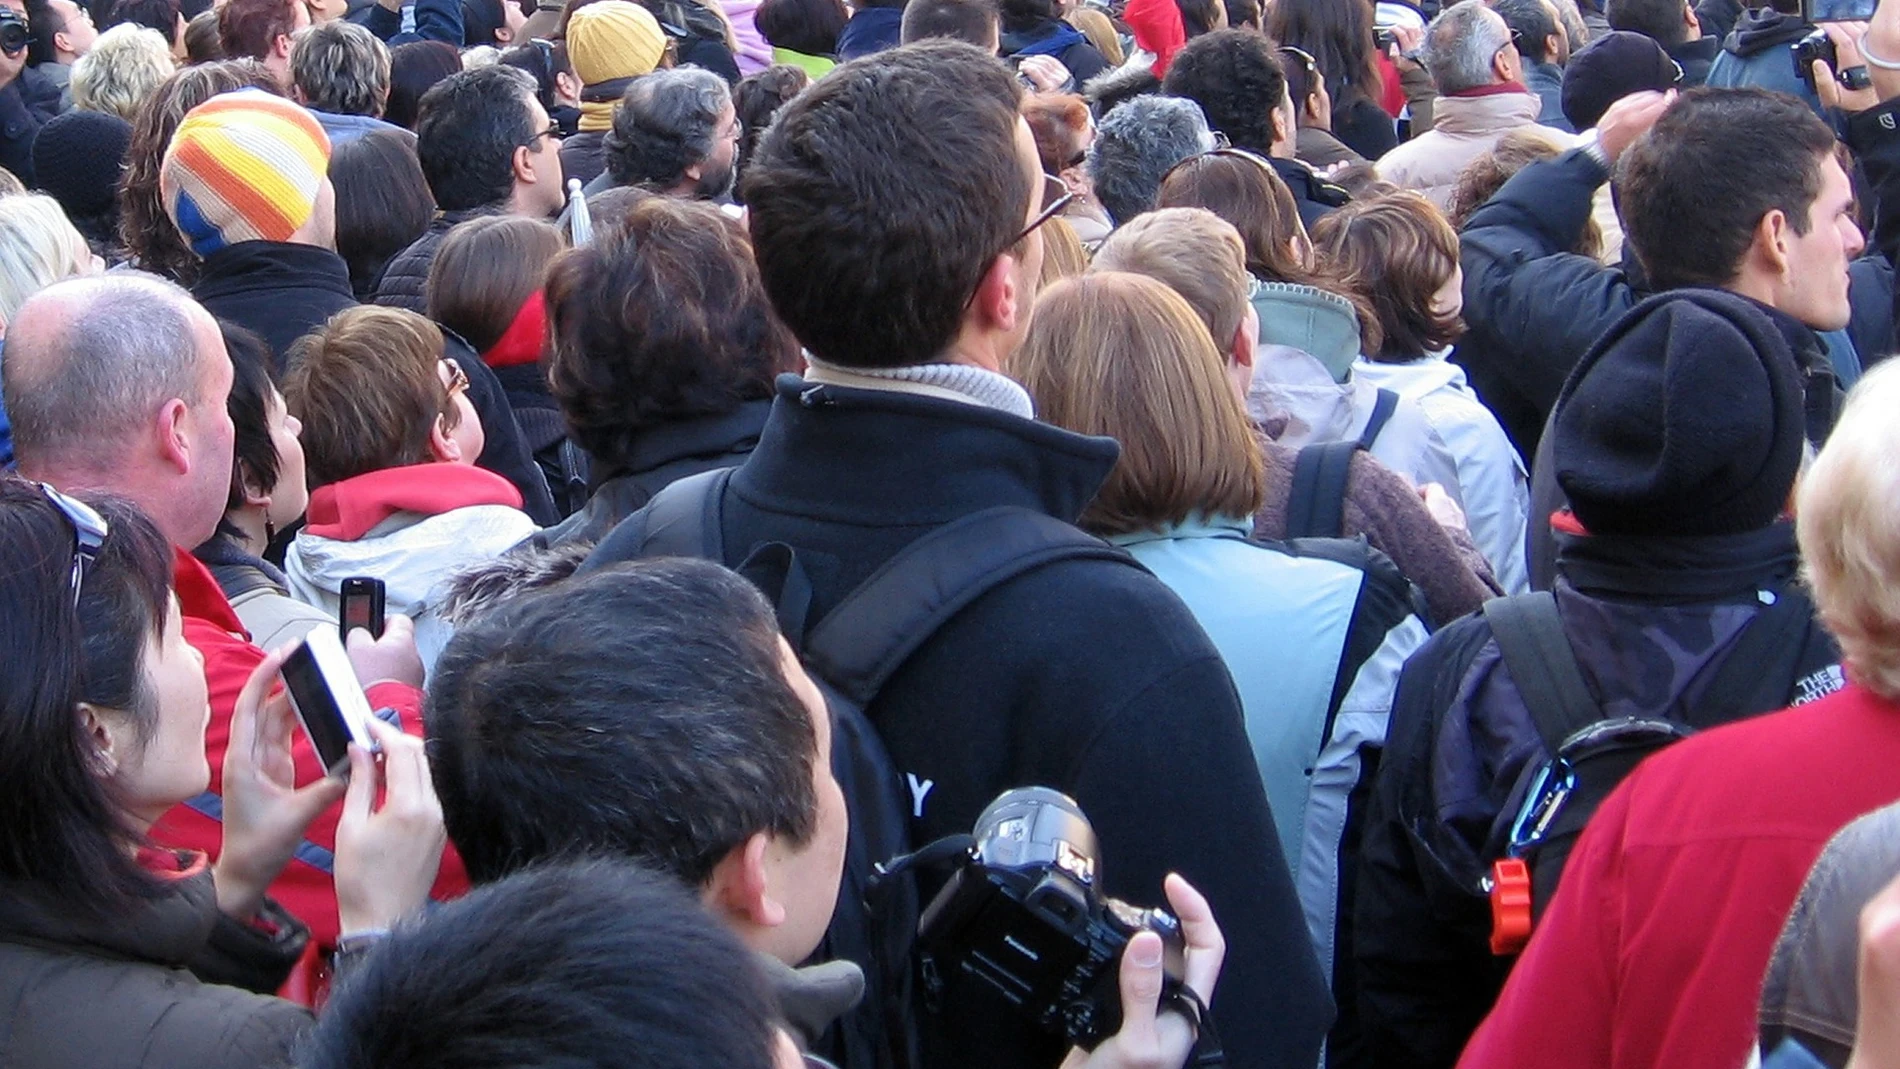 La población de España aumenta hasta registrar 47.432.805 habitantes, cifra récord gracias a la inmigración